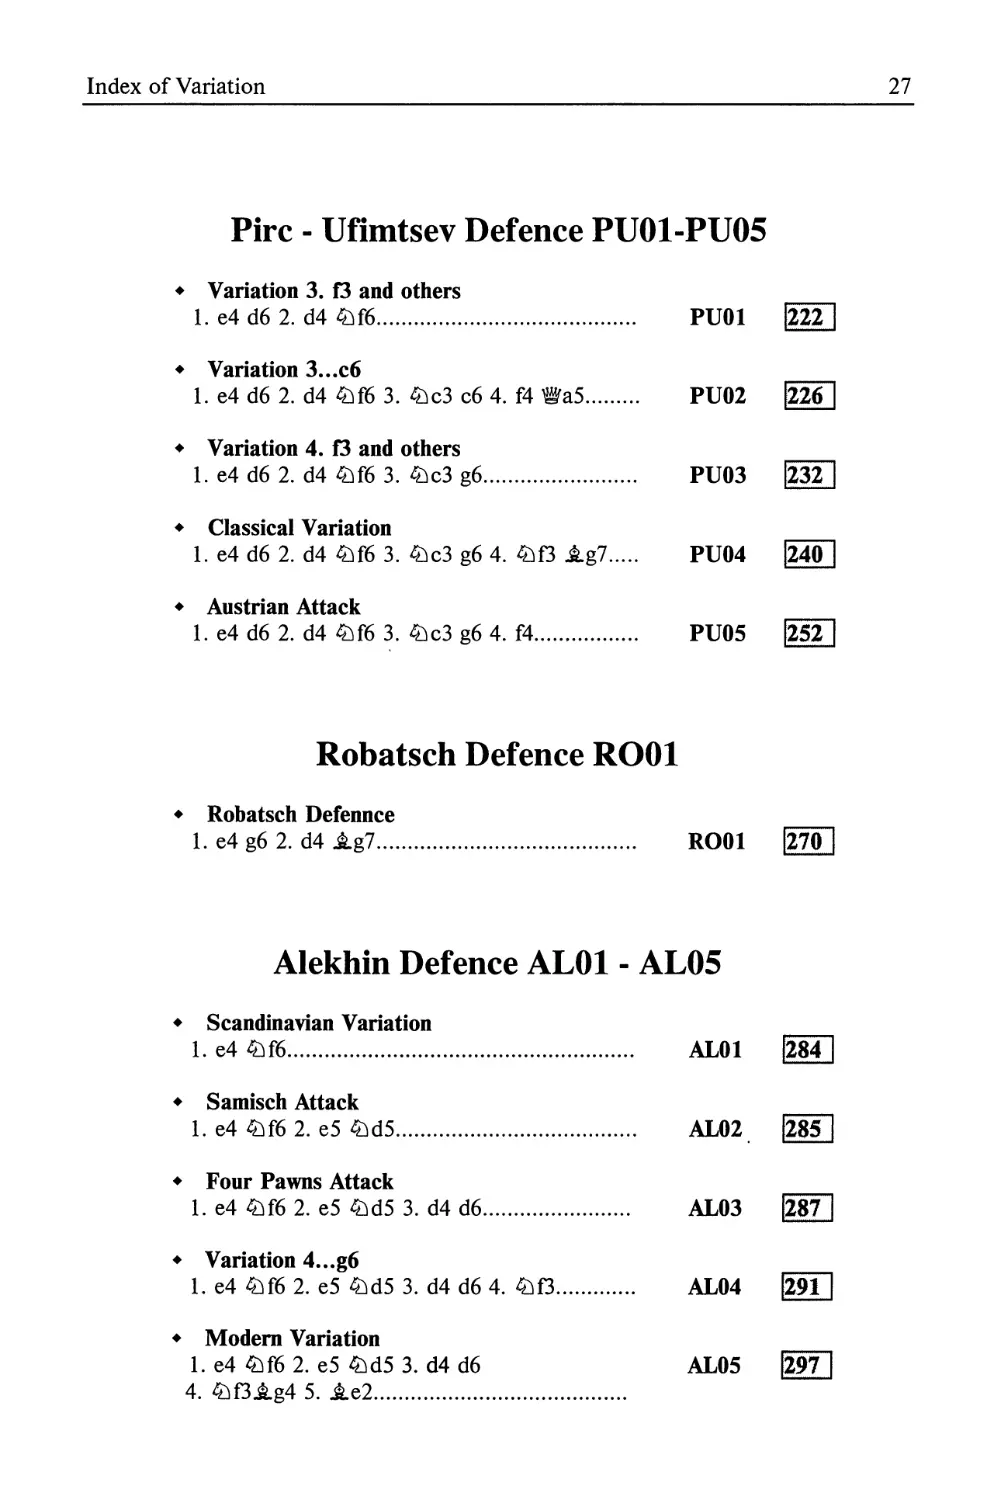 Pirz Ufimtsev Defence
Robatsch Defence
Alekhin Defence